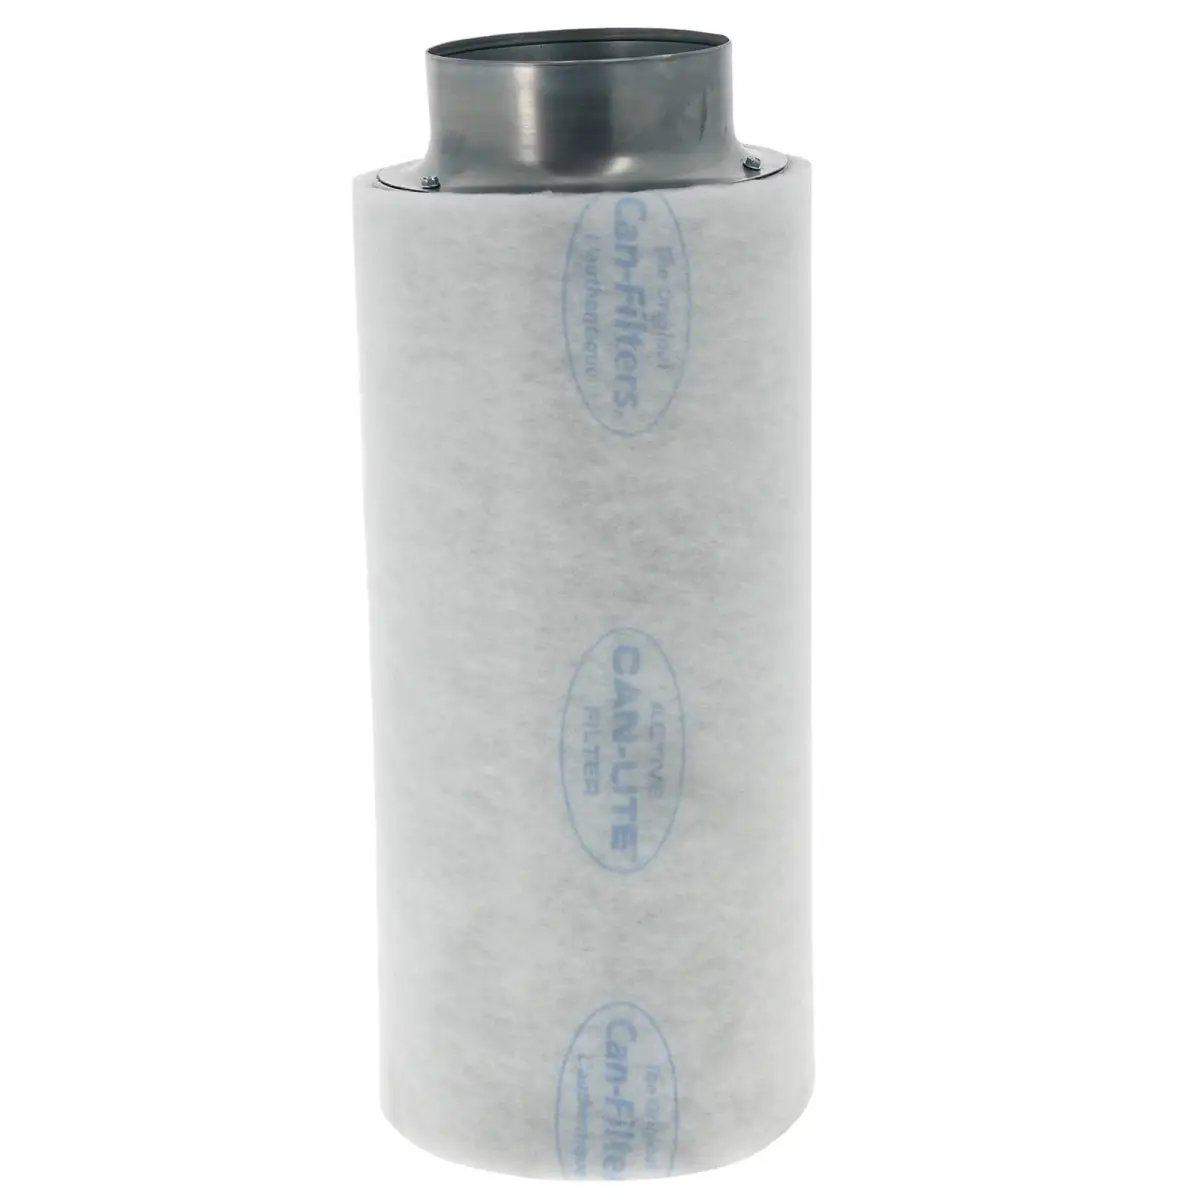 Le filtre à charbon pour culture indoor Can-Lite 600 de 160mm de diamètre